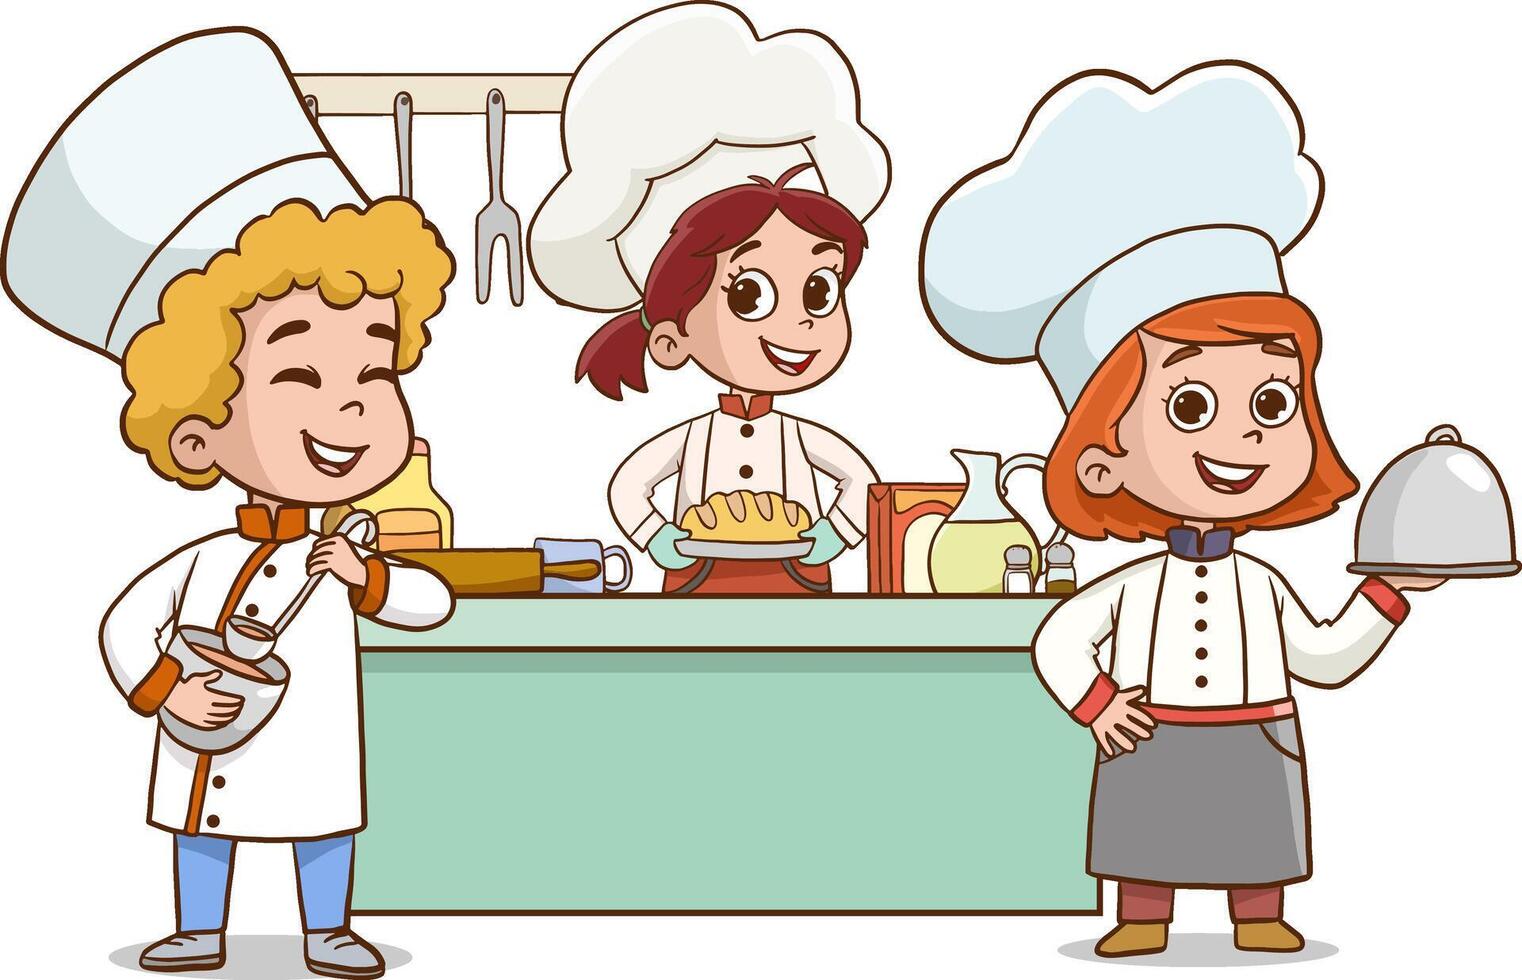 illustratie van kind kookt. tekenfilm mascottes in divers dynamisch poseert. mensen jongen en meisje chef in wit hoeden, illustratie vector